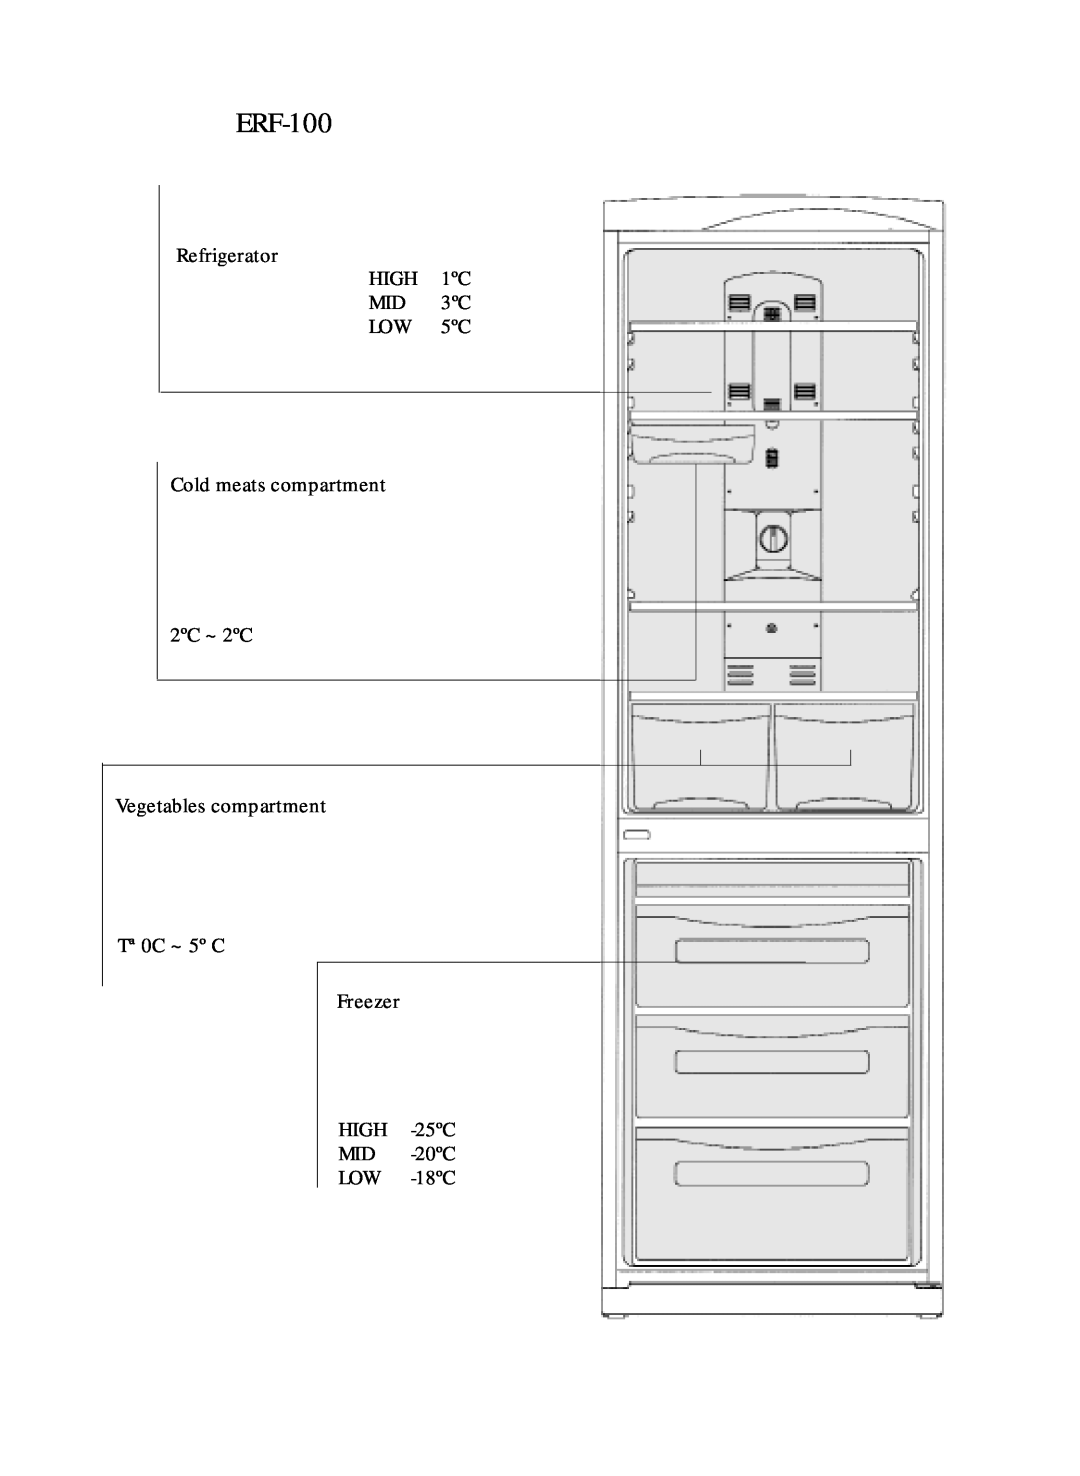 Daewoo ERF-100 Refrigerator HIGH 1ºC MID 3ºC LOW 5ºC, Cold meats compartment 2ºC ~ 2ºC, HIGH -25ºC MID -20ºC LOW -18ºC 